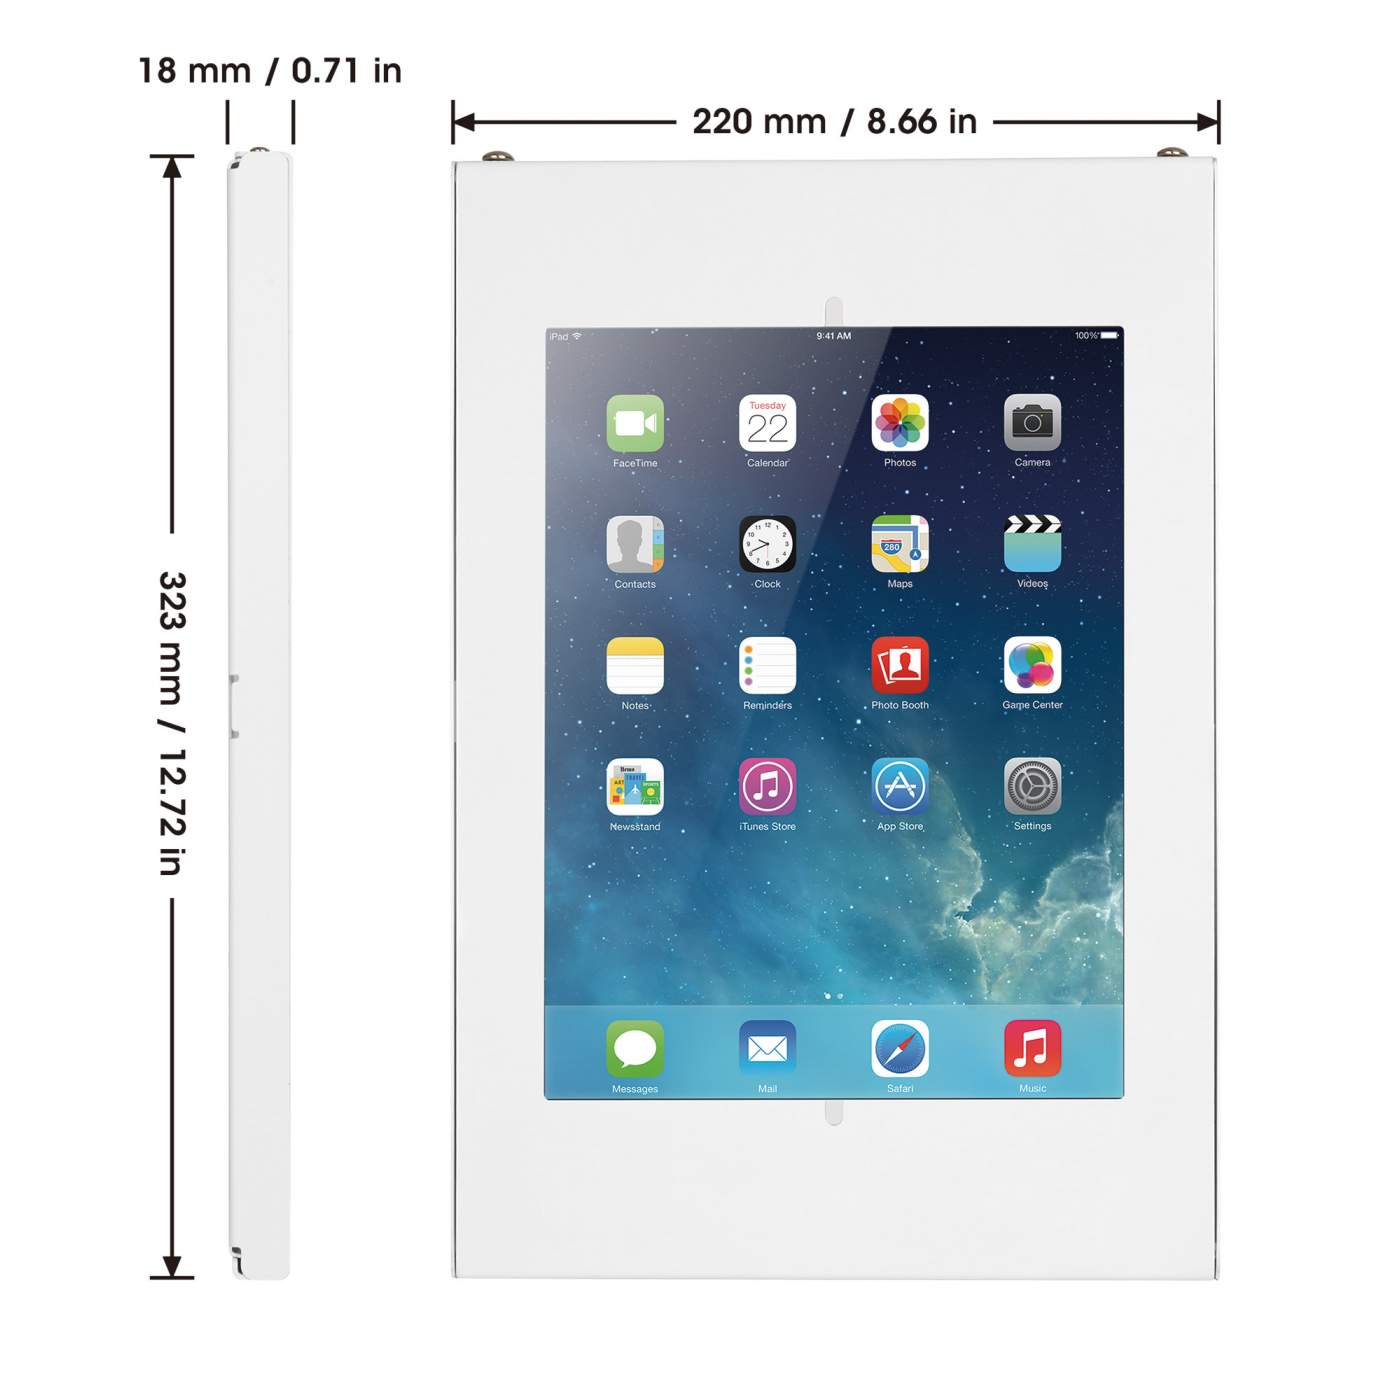 Soporte de pared para tablets iPad y Galaxy